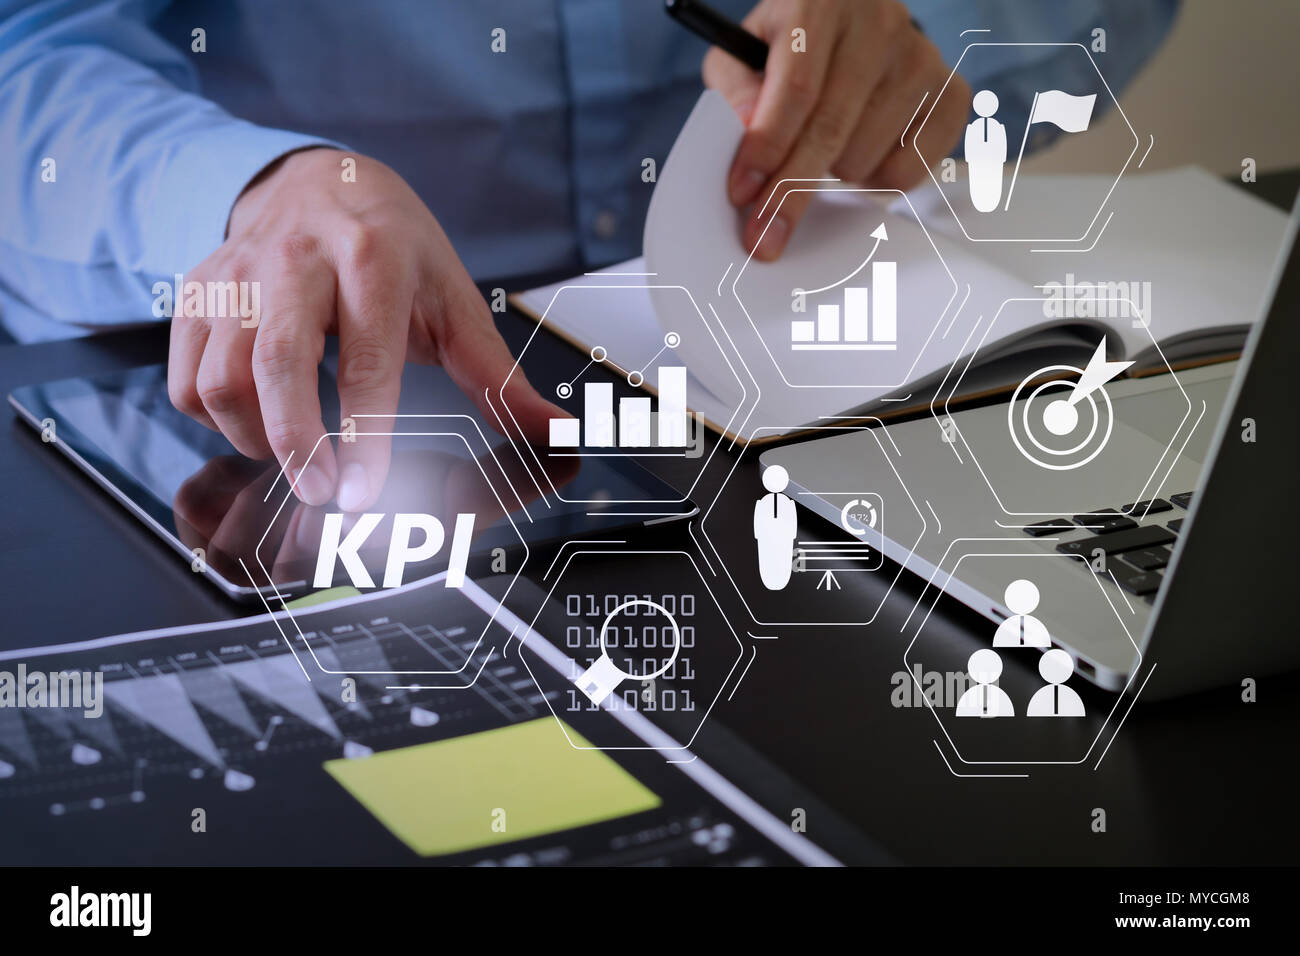 Indicateur de performance clé (KPI) workinng avec Business Intelligence (BI) indicateurs pour mesurer le rendement et l'objectif prévu.man avec sm Banque D'Images